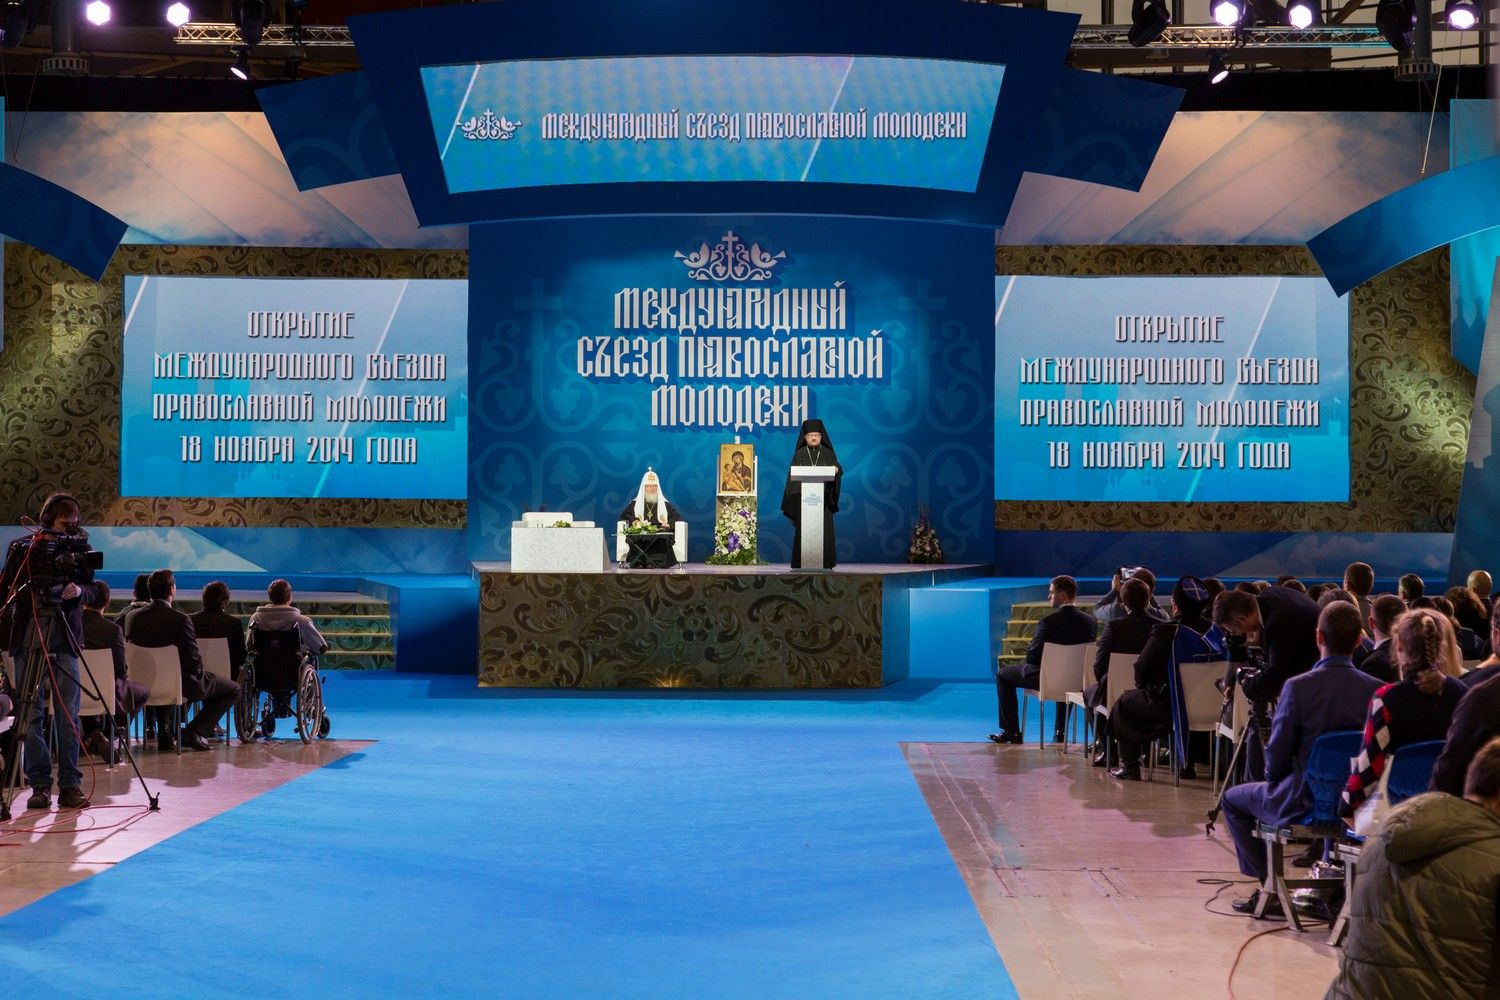 18-19 ноября 2014 года в Москве прошел Международный съезд православной молодежи. 